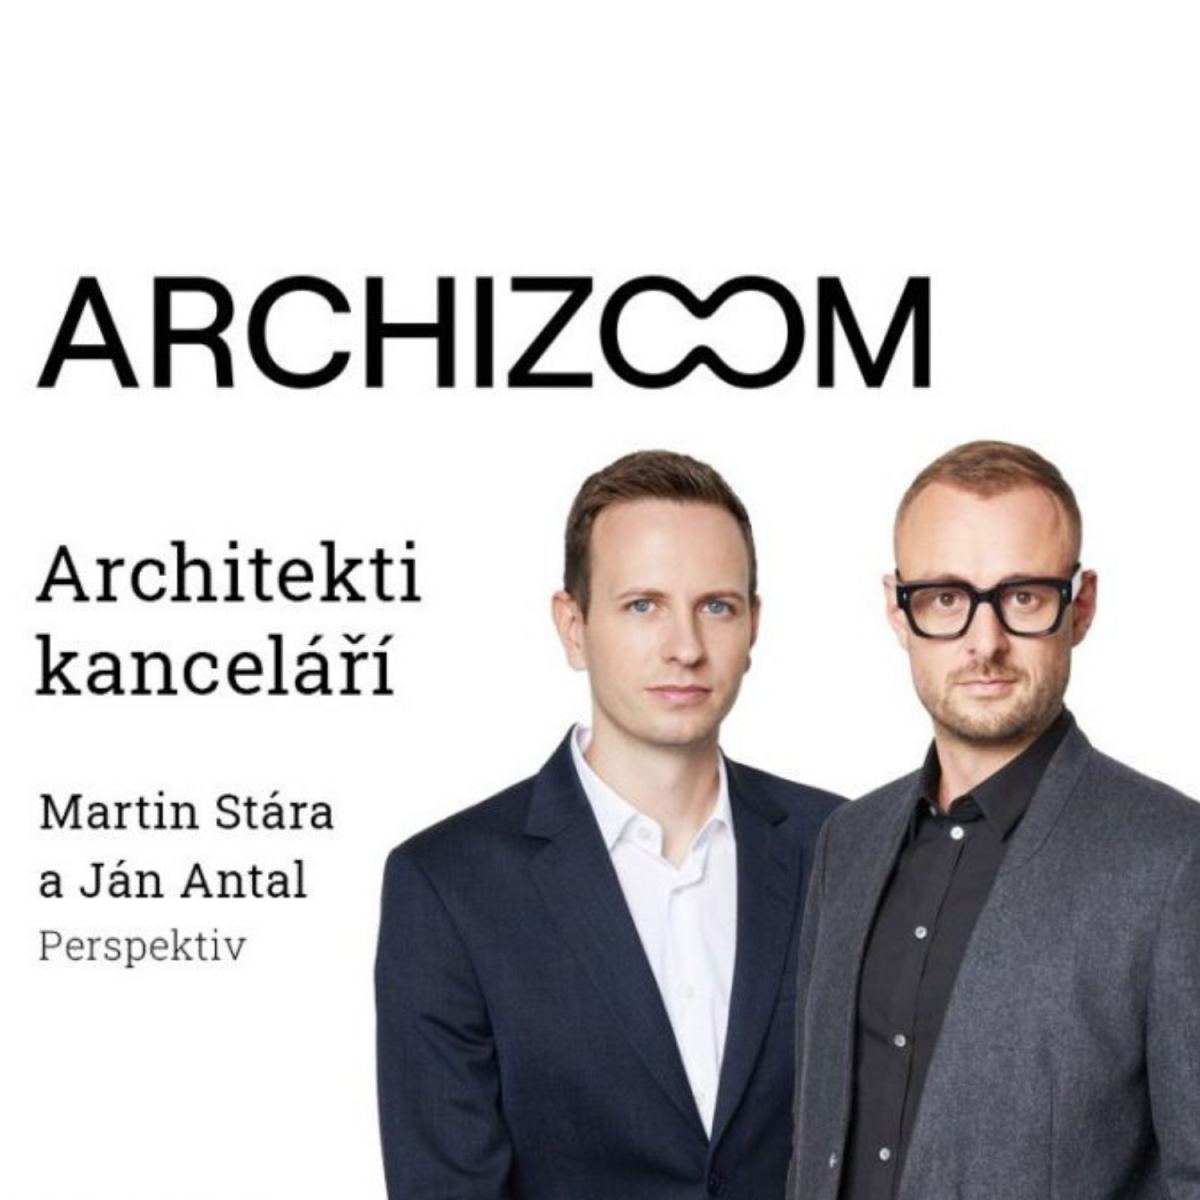 Rozhovor pro pořad Architekti kanceláří - Archizoom a studio Perspektiv